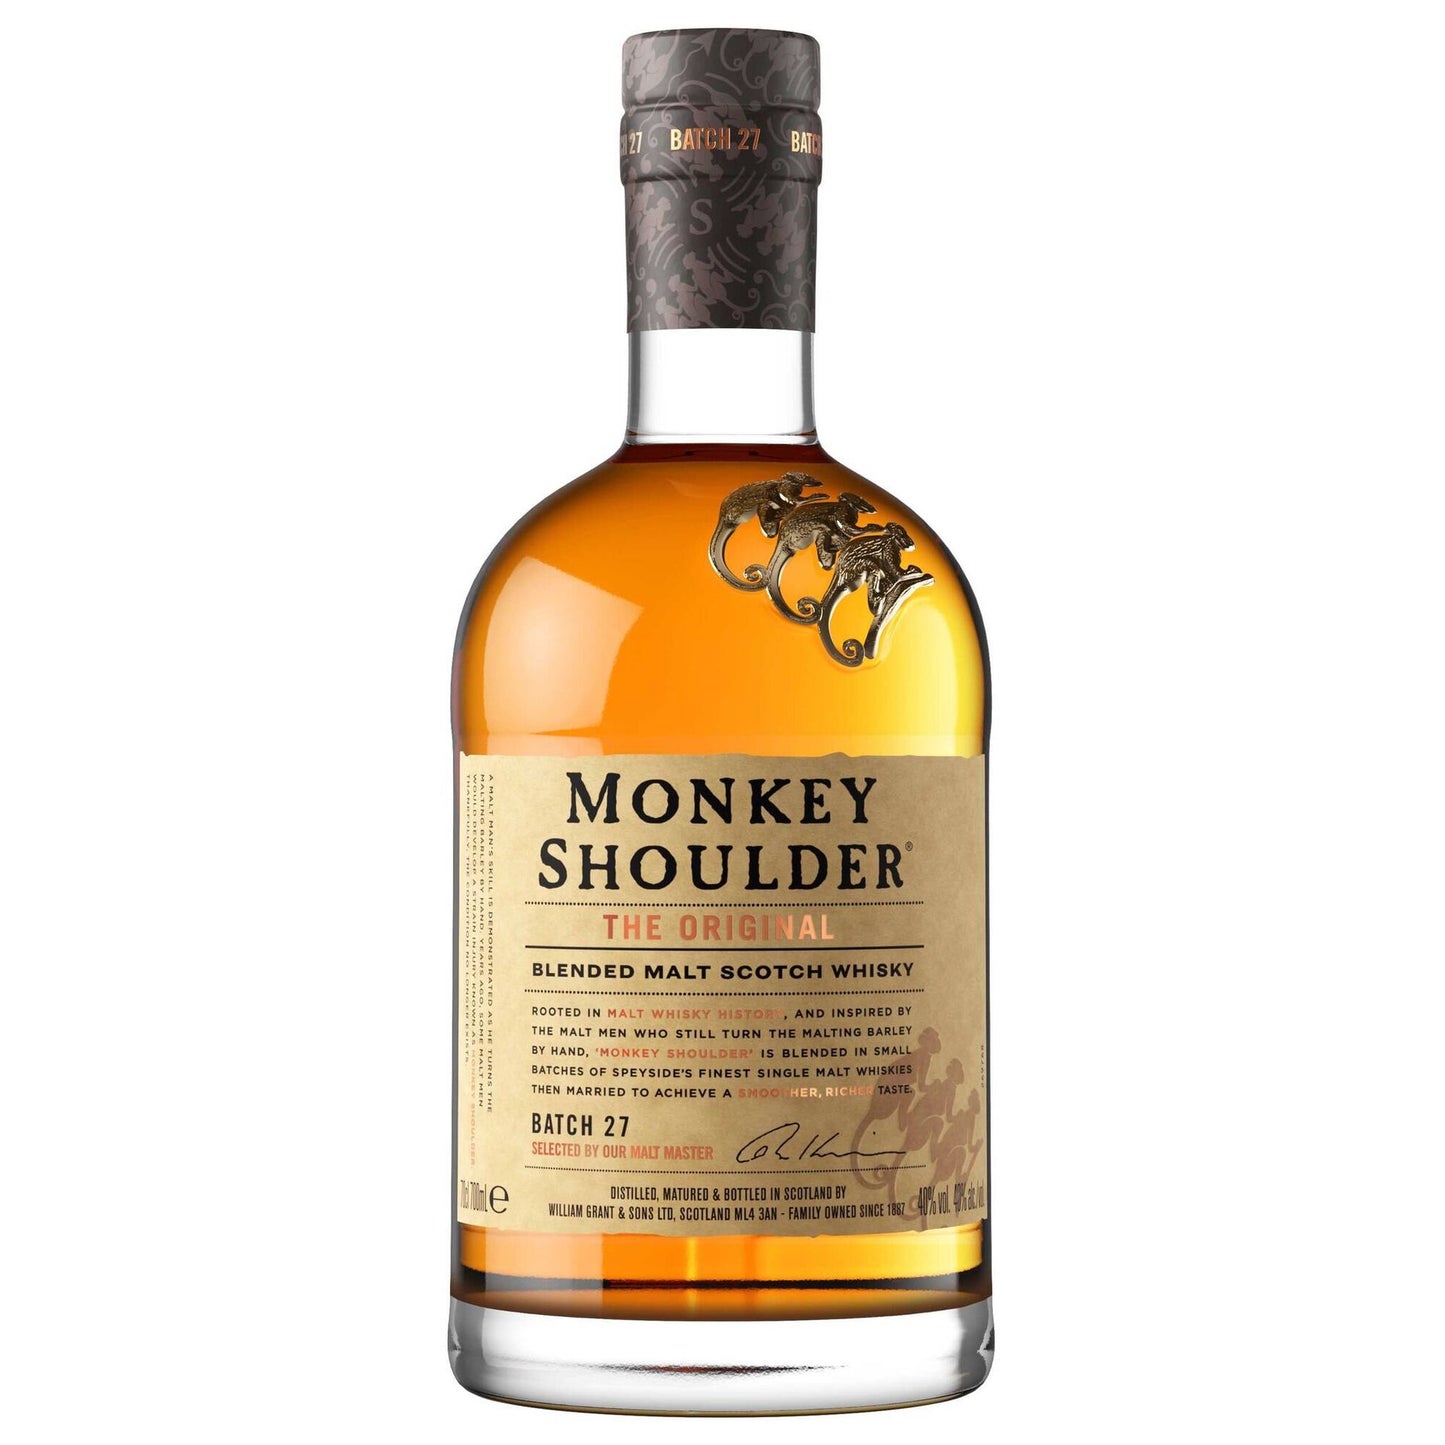 Monkey Shoulder - Vinogrande